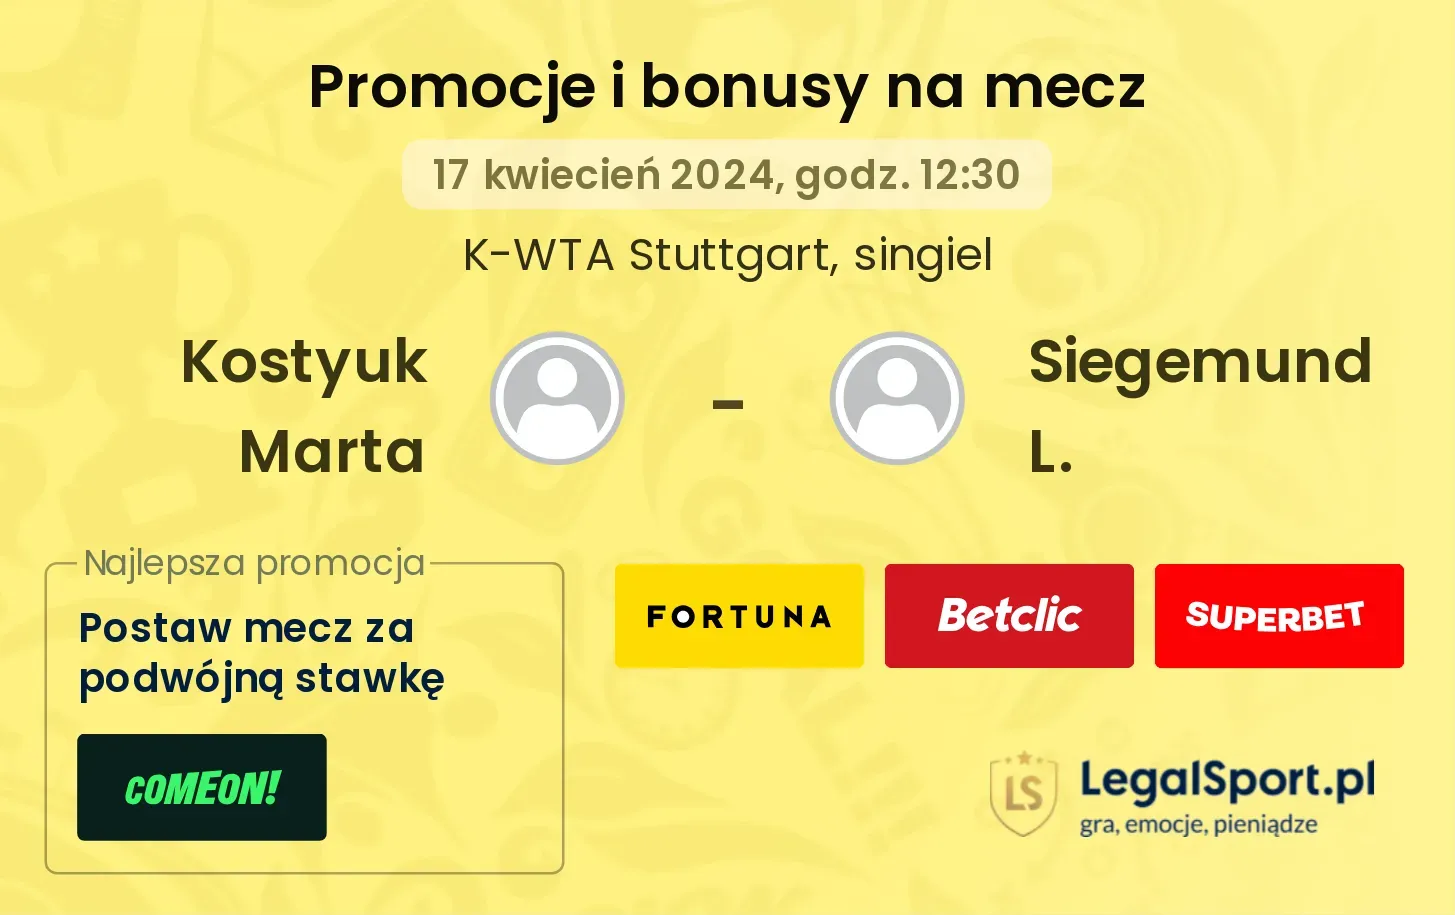 Kostyuk Marta - Siegemund L. promocje bonusy na mecz